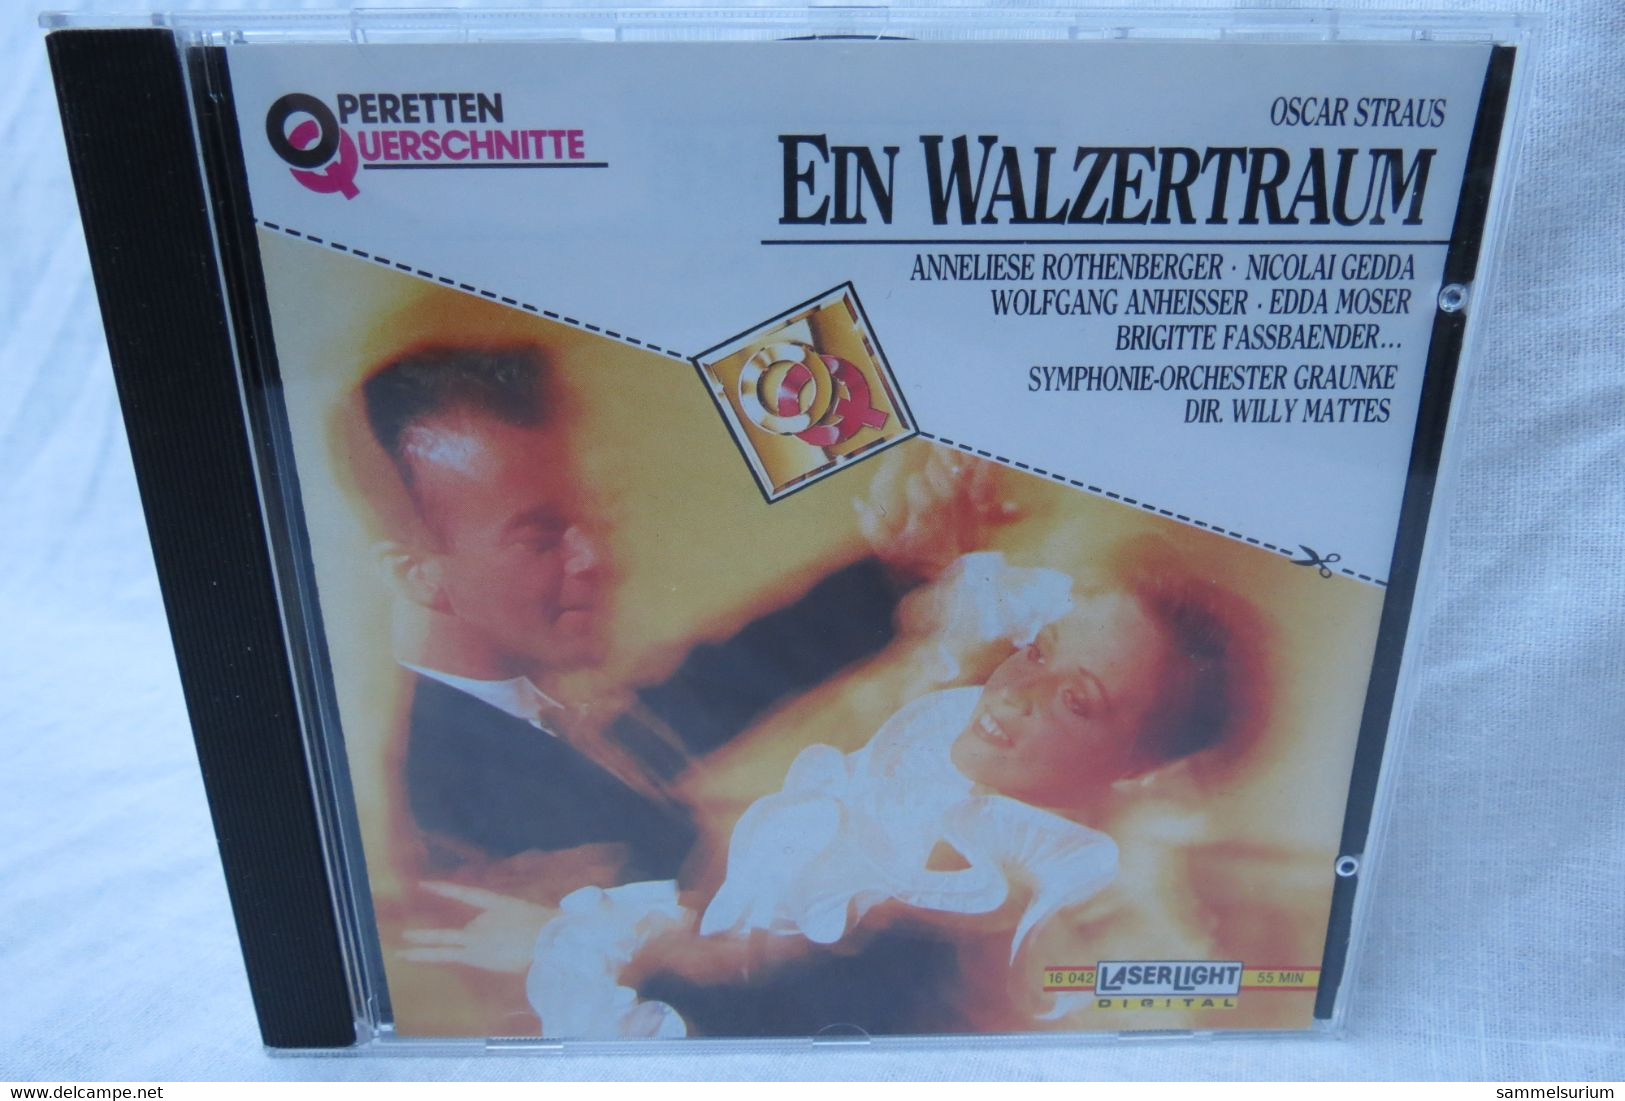 CD "Oscar Straus" Ein Walzertraum Aus Der Reihe Operetten Querschnitte - Opera